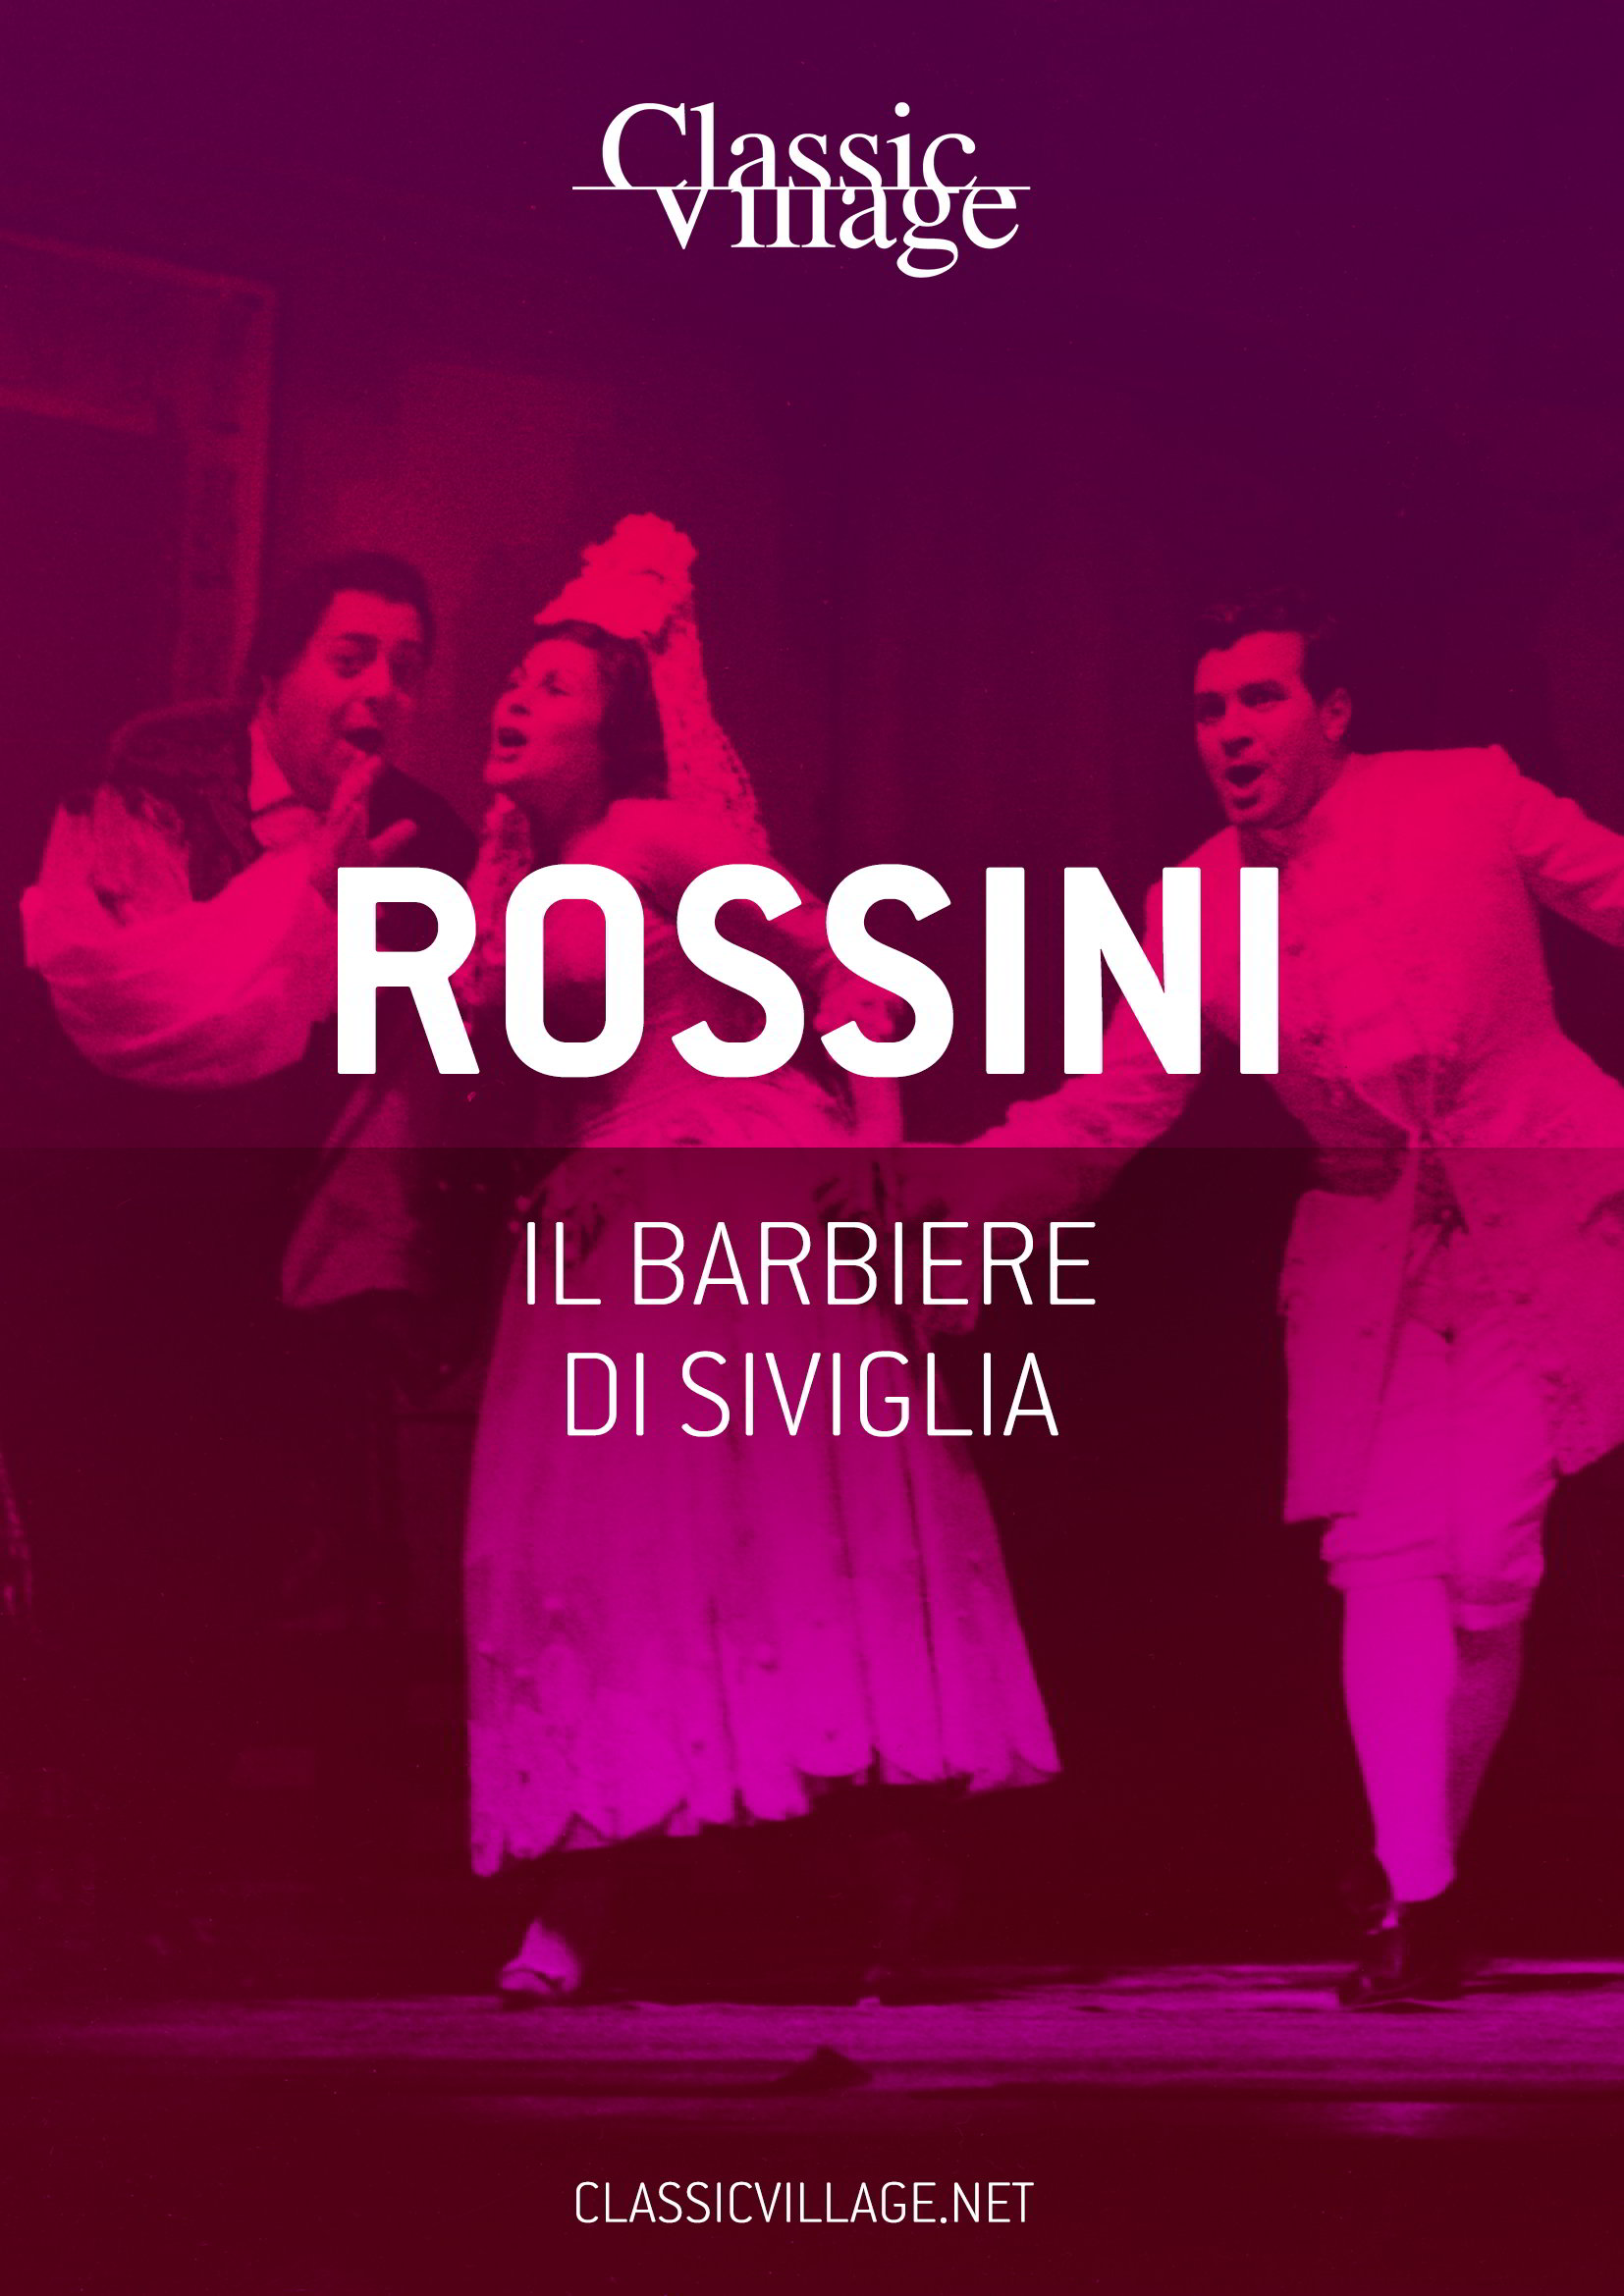 Copertina libretto d'opera "il barbiere di Siviglia" di Rossini